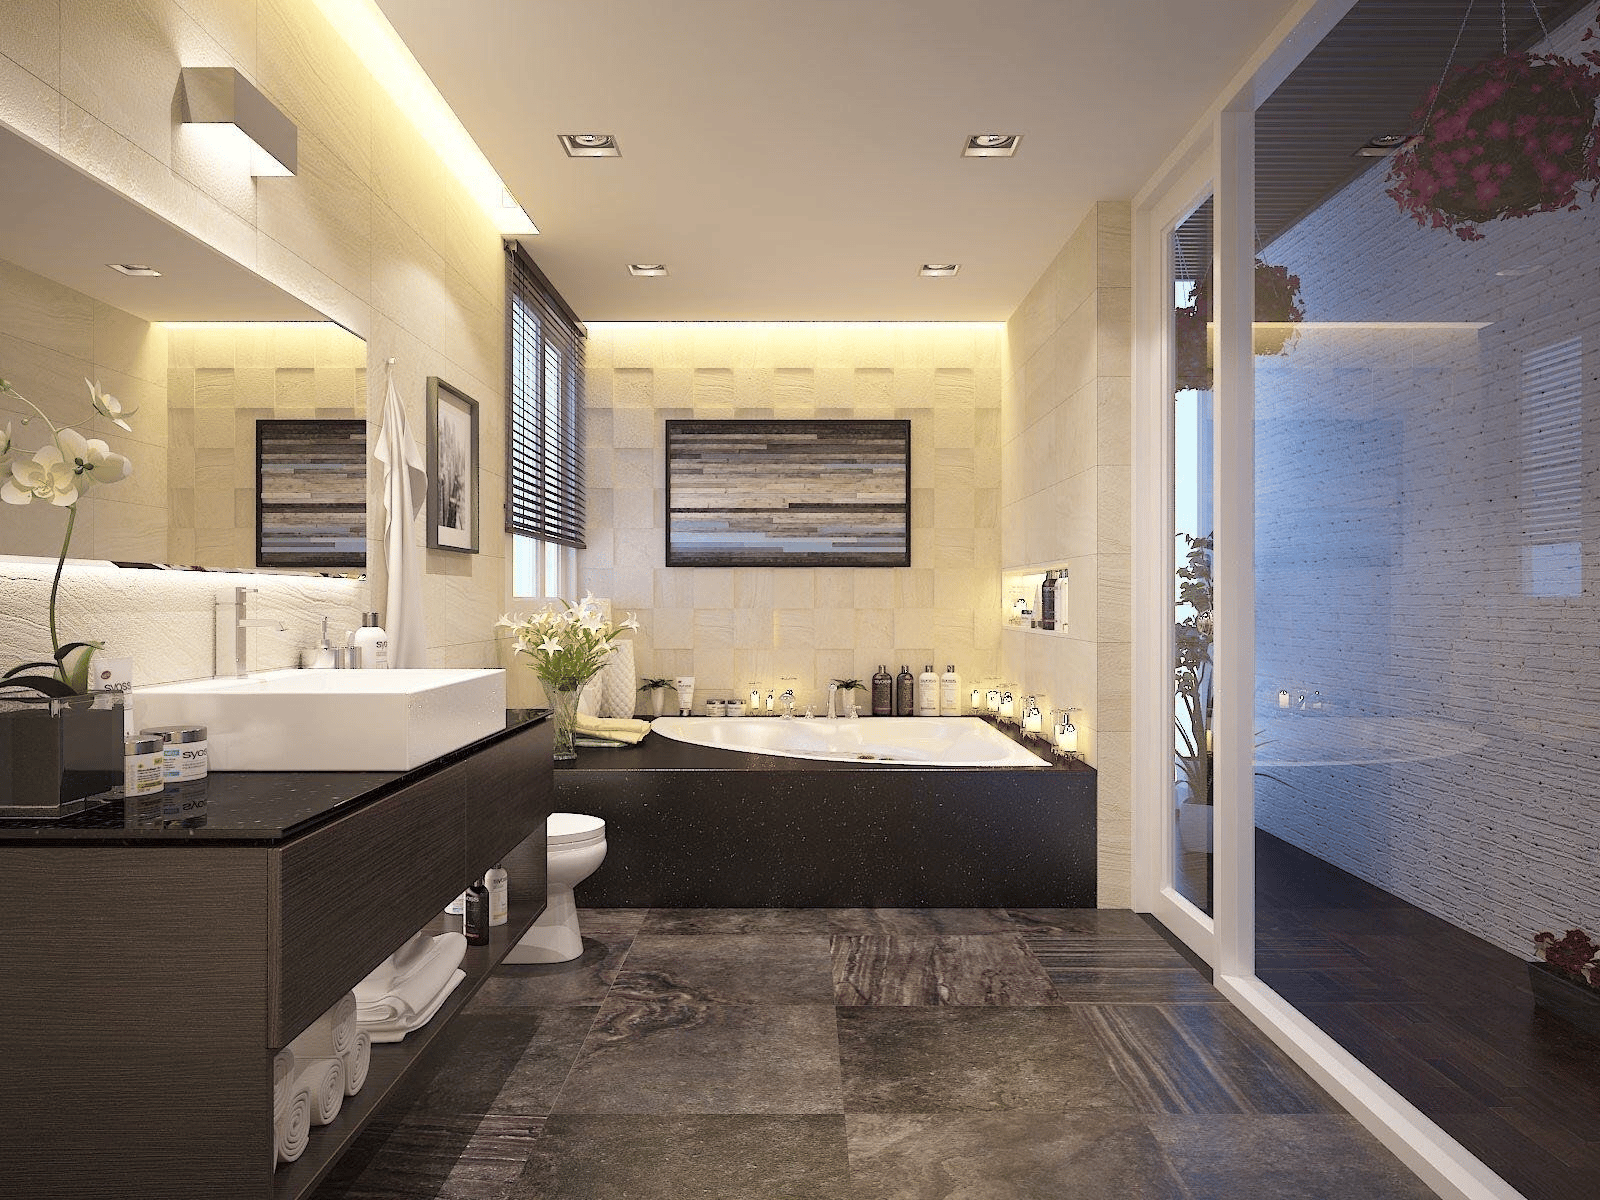 Tạm biệt phòng tắm lỗi thời trong căn hộ chung cư: Trải nghiệm đẳng cấp với thiết kế phòng tắm hiện đại